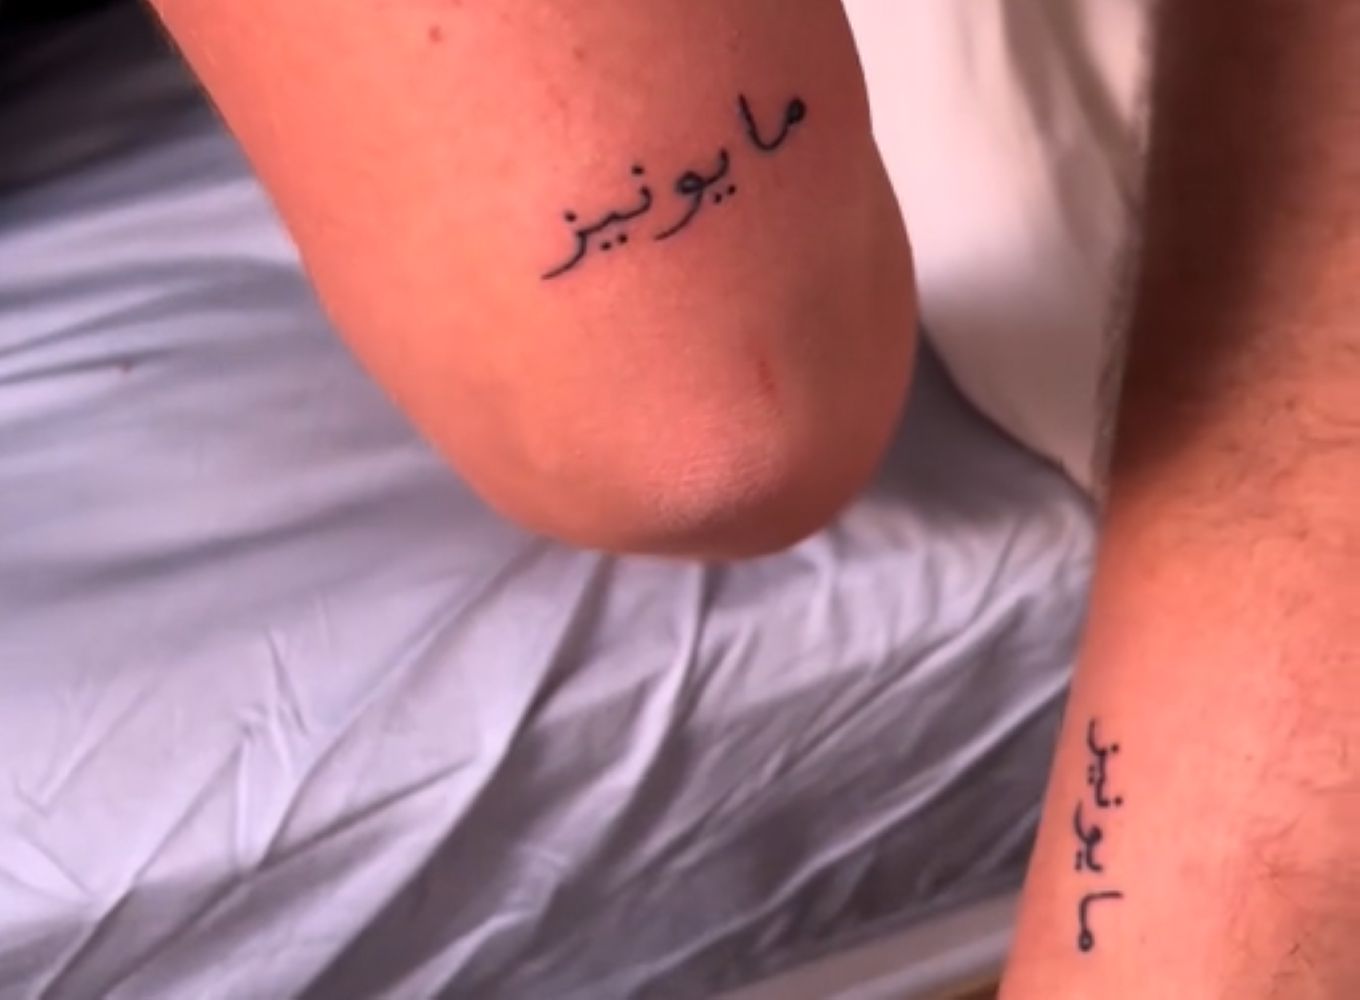 Turystka zrobiła sobie tatuaż w Maroku. Internet pęka ze śmiechu